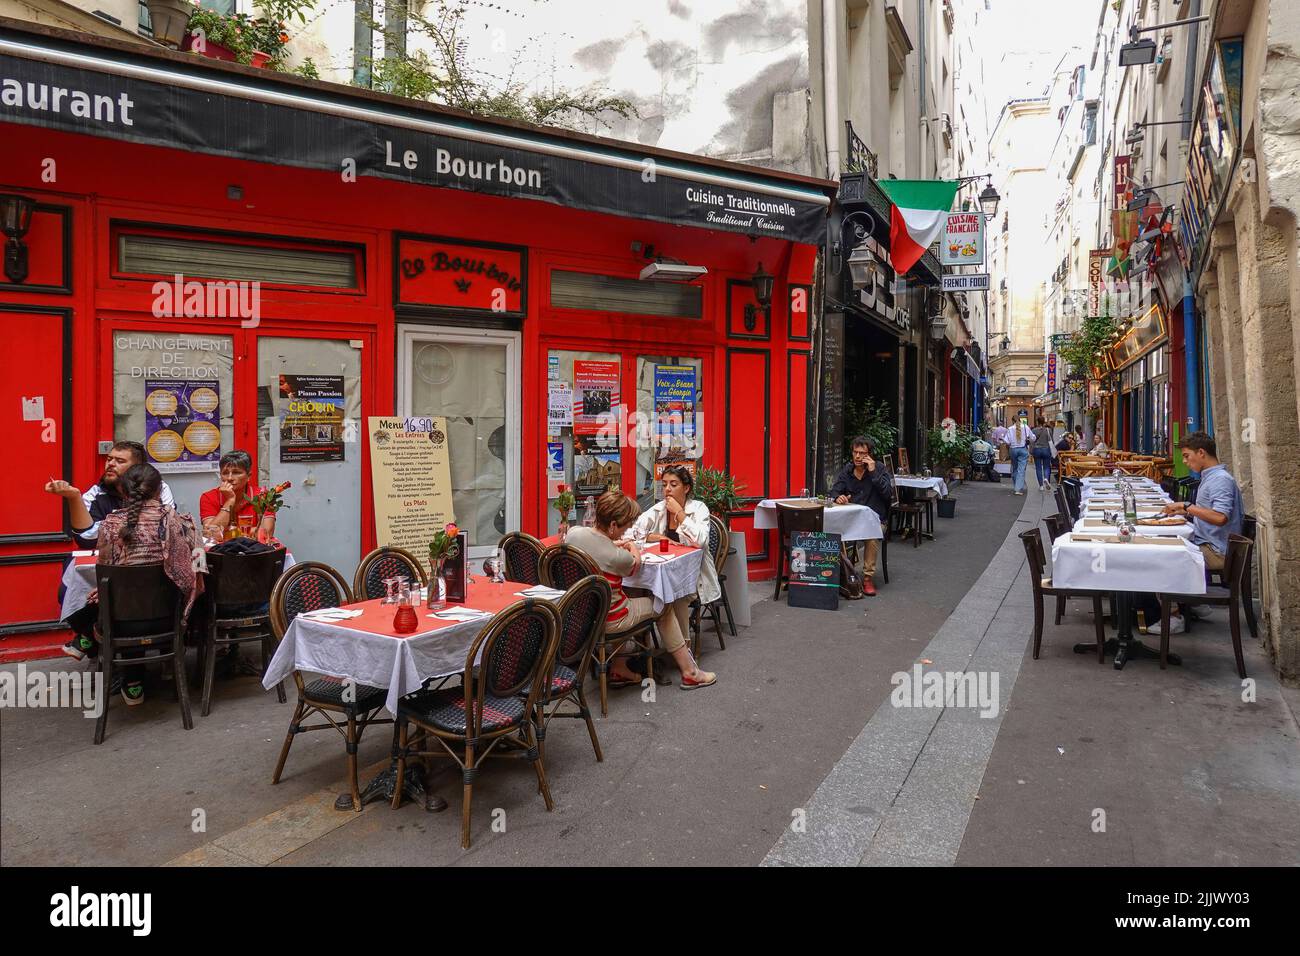 Francia París, restaurantes y restaurantes en la animada Rue de la Huchette, una de las calles más antiguas que corren a lo largo de la Rive Gauche en París. Ejecución de eas Foto de stock